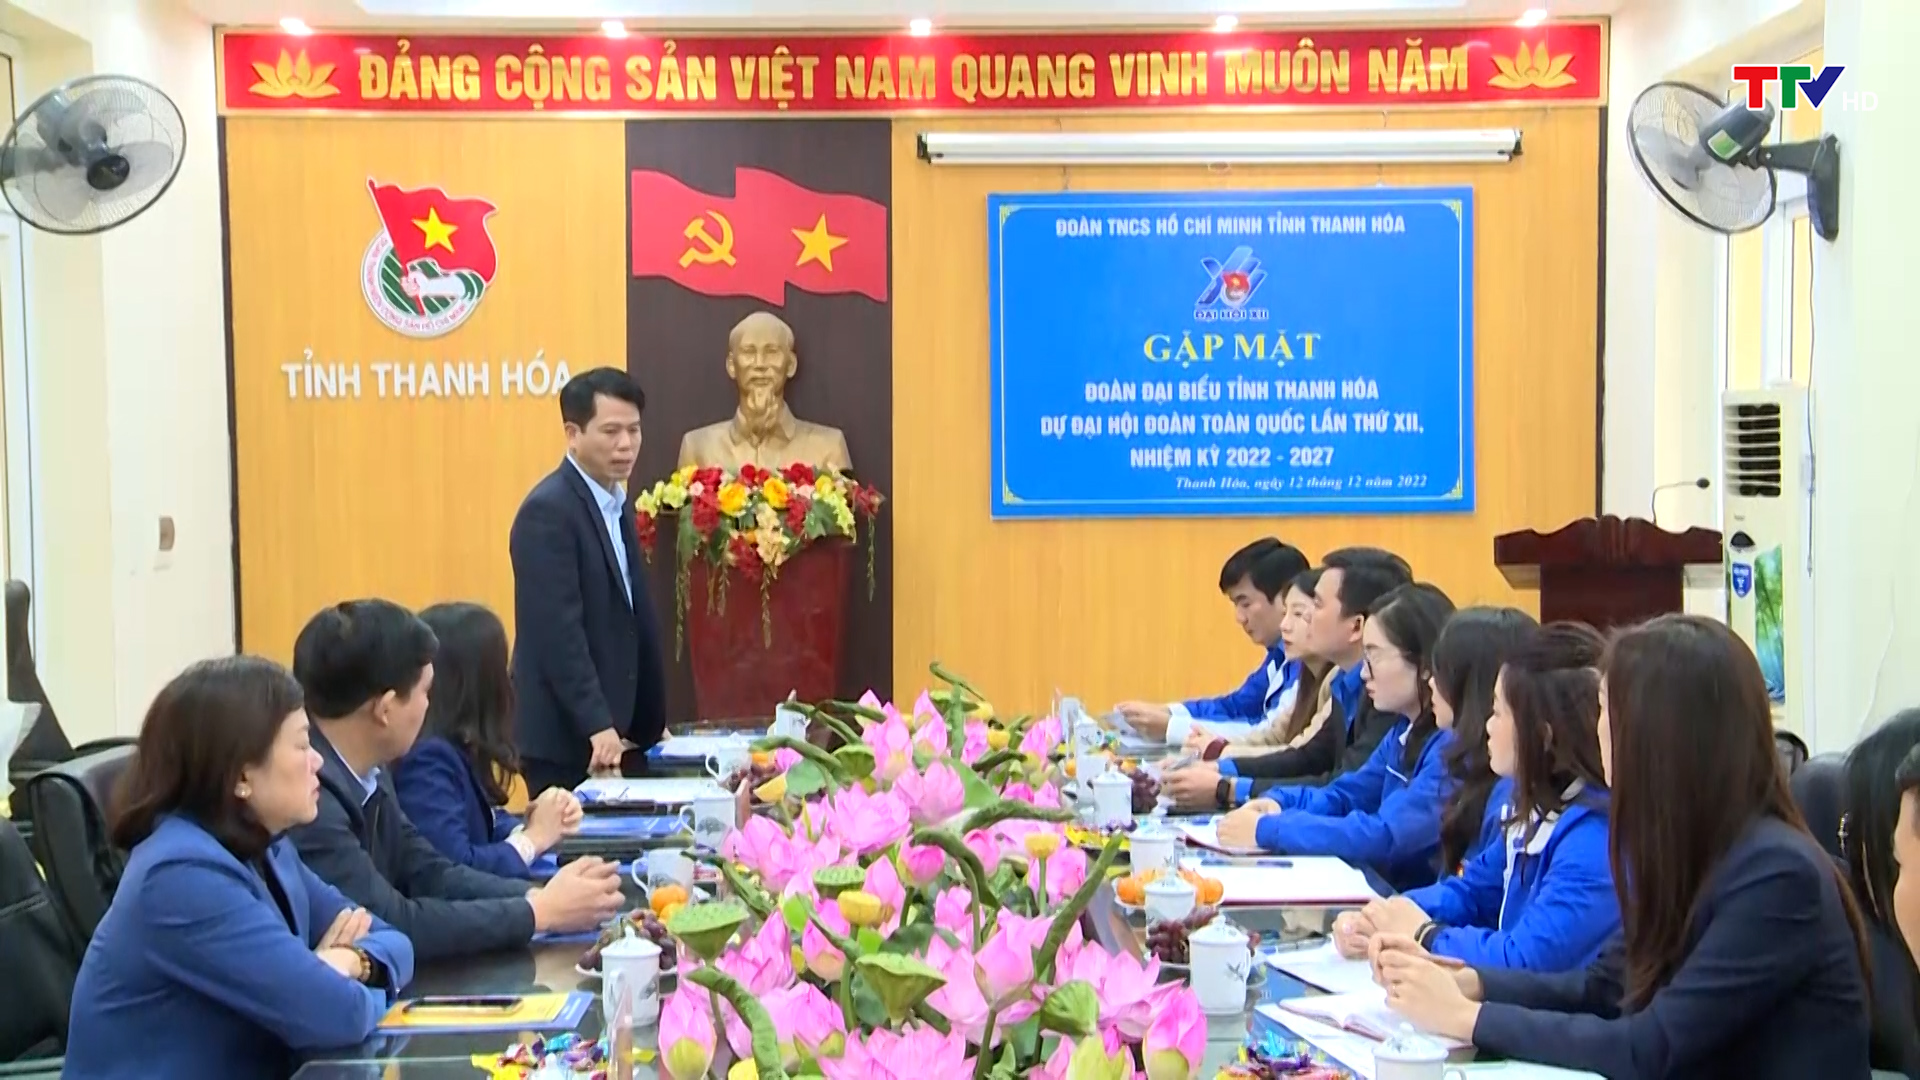 Gặp mặt Đoàn đại biểu tỉnh Thanh Hoá dự Đại hội Đoàn toàn quốc lần thứ XII, nhiệm kỳ 2022 -2027 - Ảnh 3.